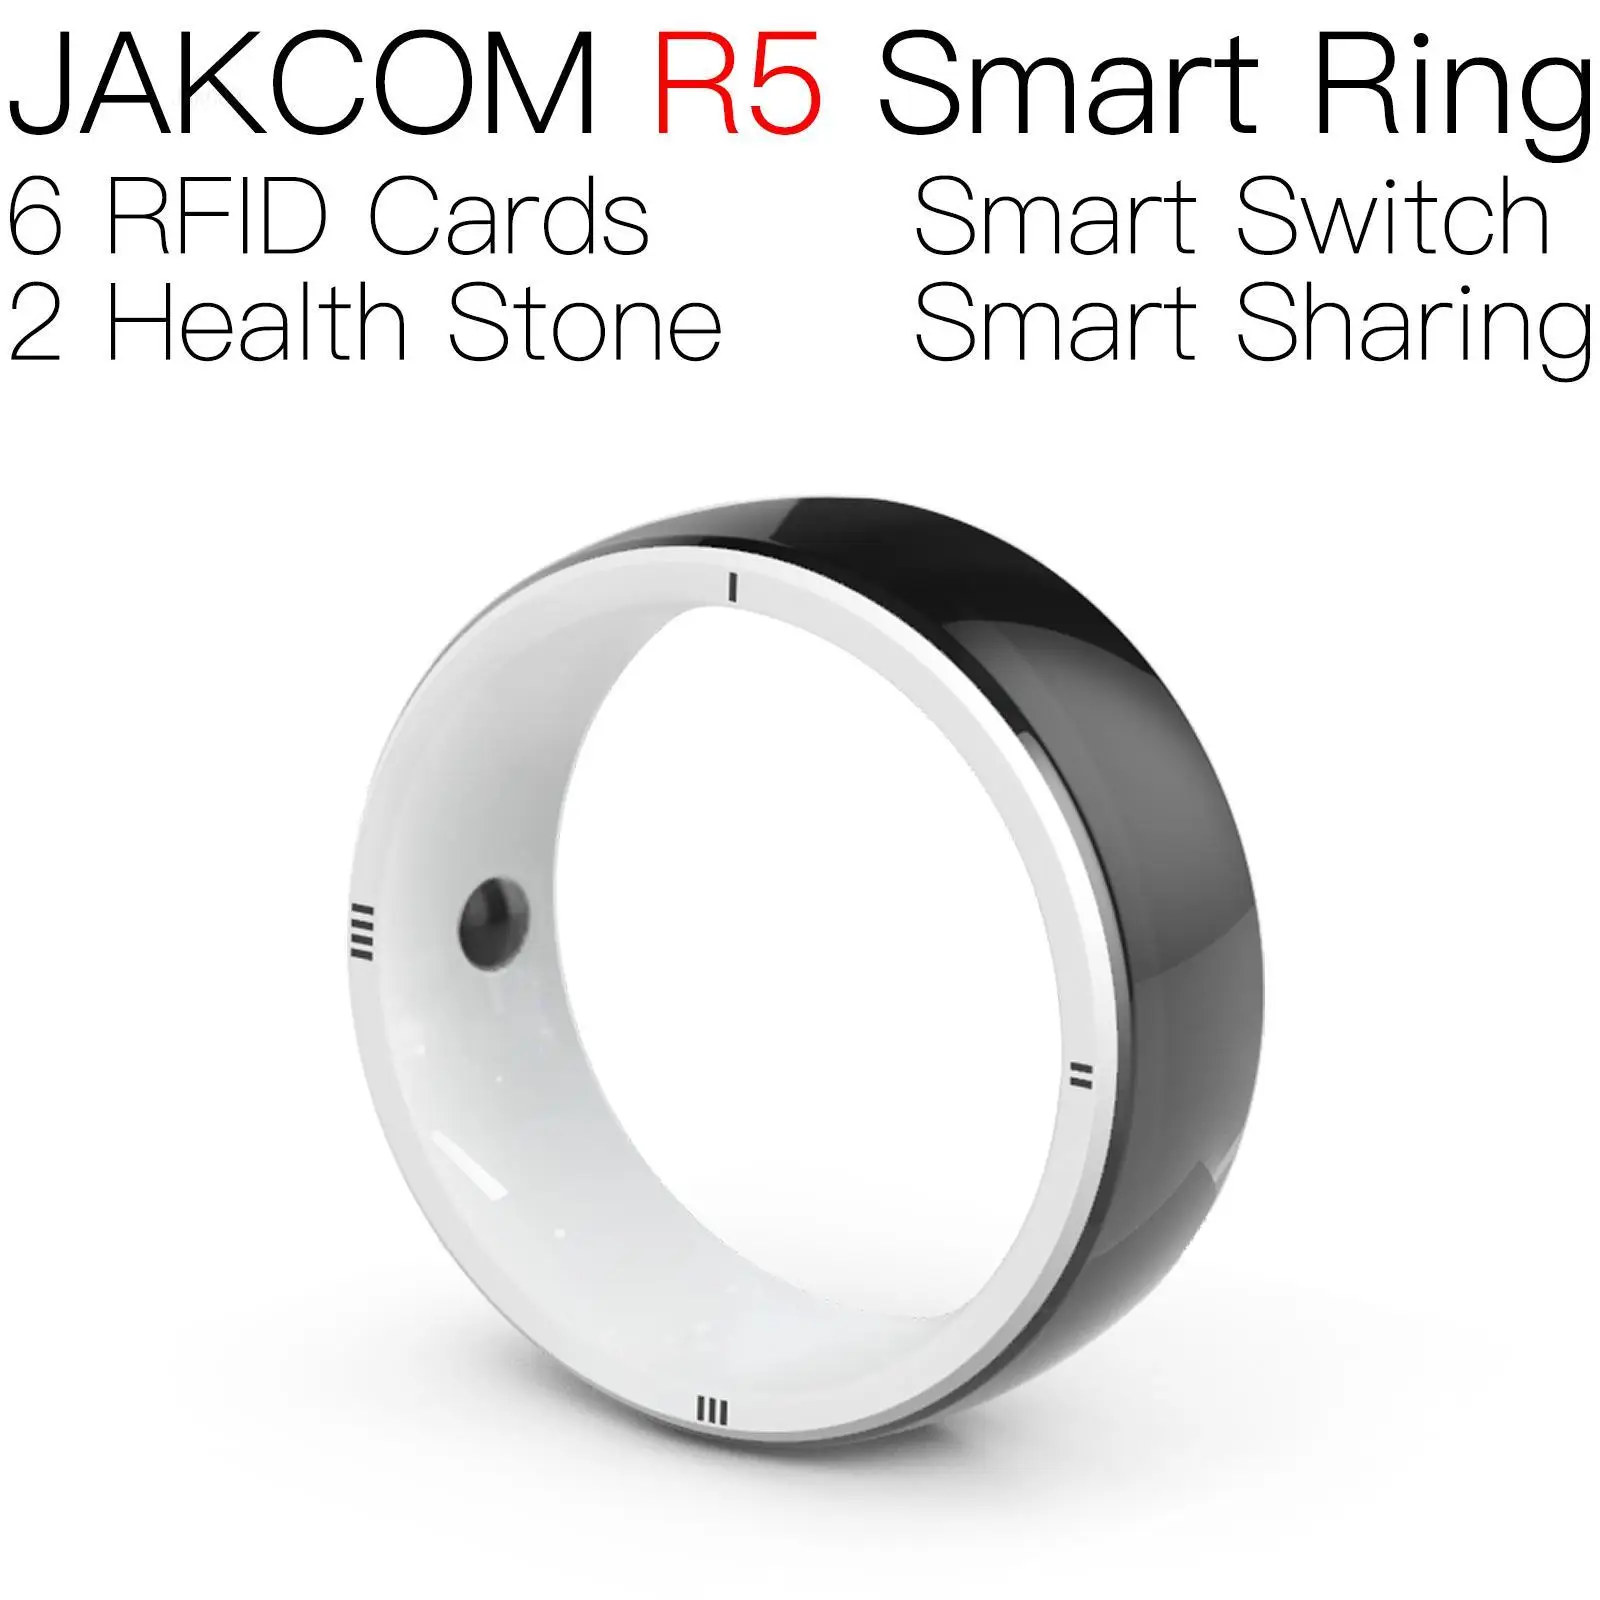 

JAKCOM R5 Smart Ring Super value than mikro czip 100 pet rfid blank tag lot card em4100 nfc ntag215 anti metal id chip 125khz